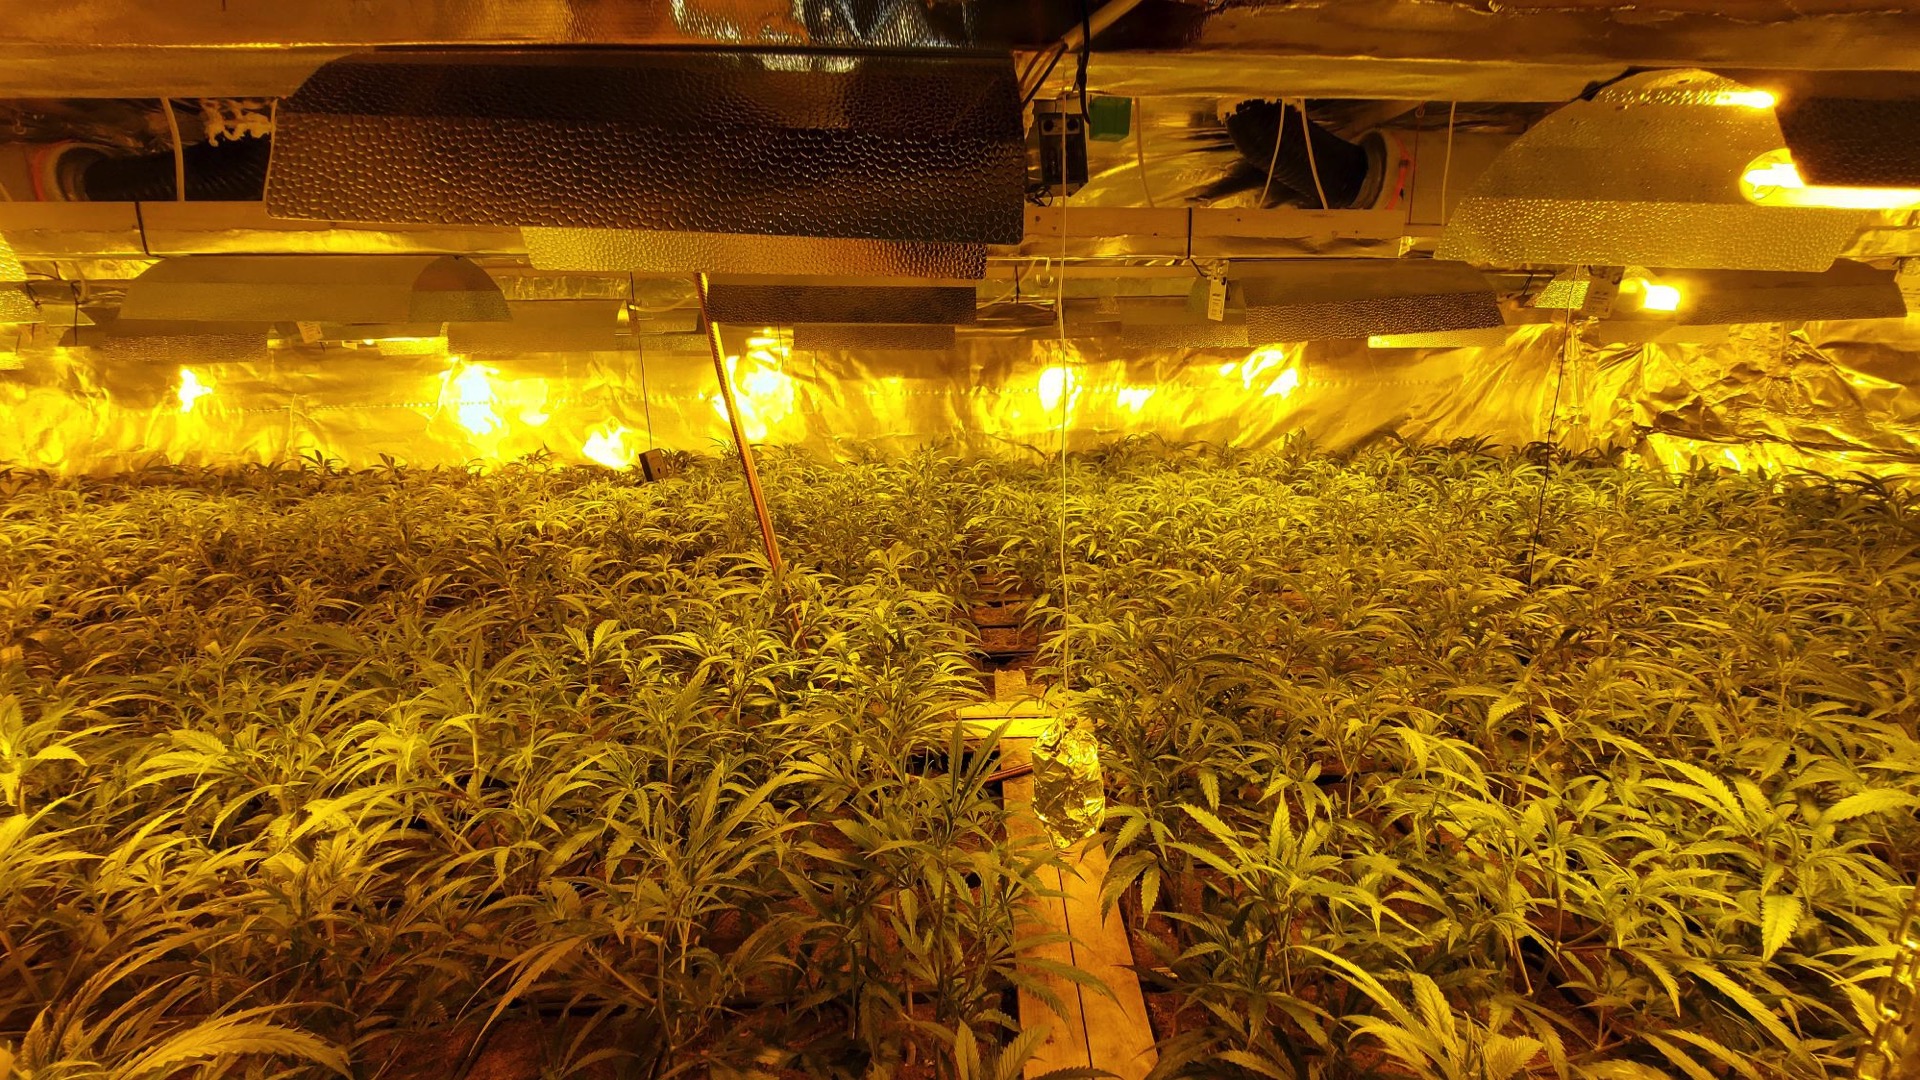 Chièvres : 700 plants de cannabis découverts par la zone de police Sylle et Dendre